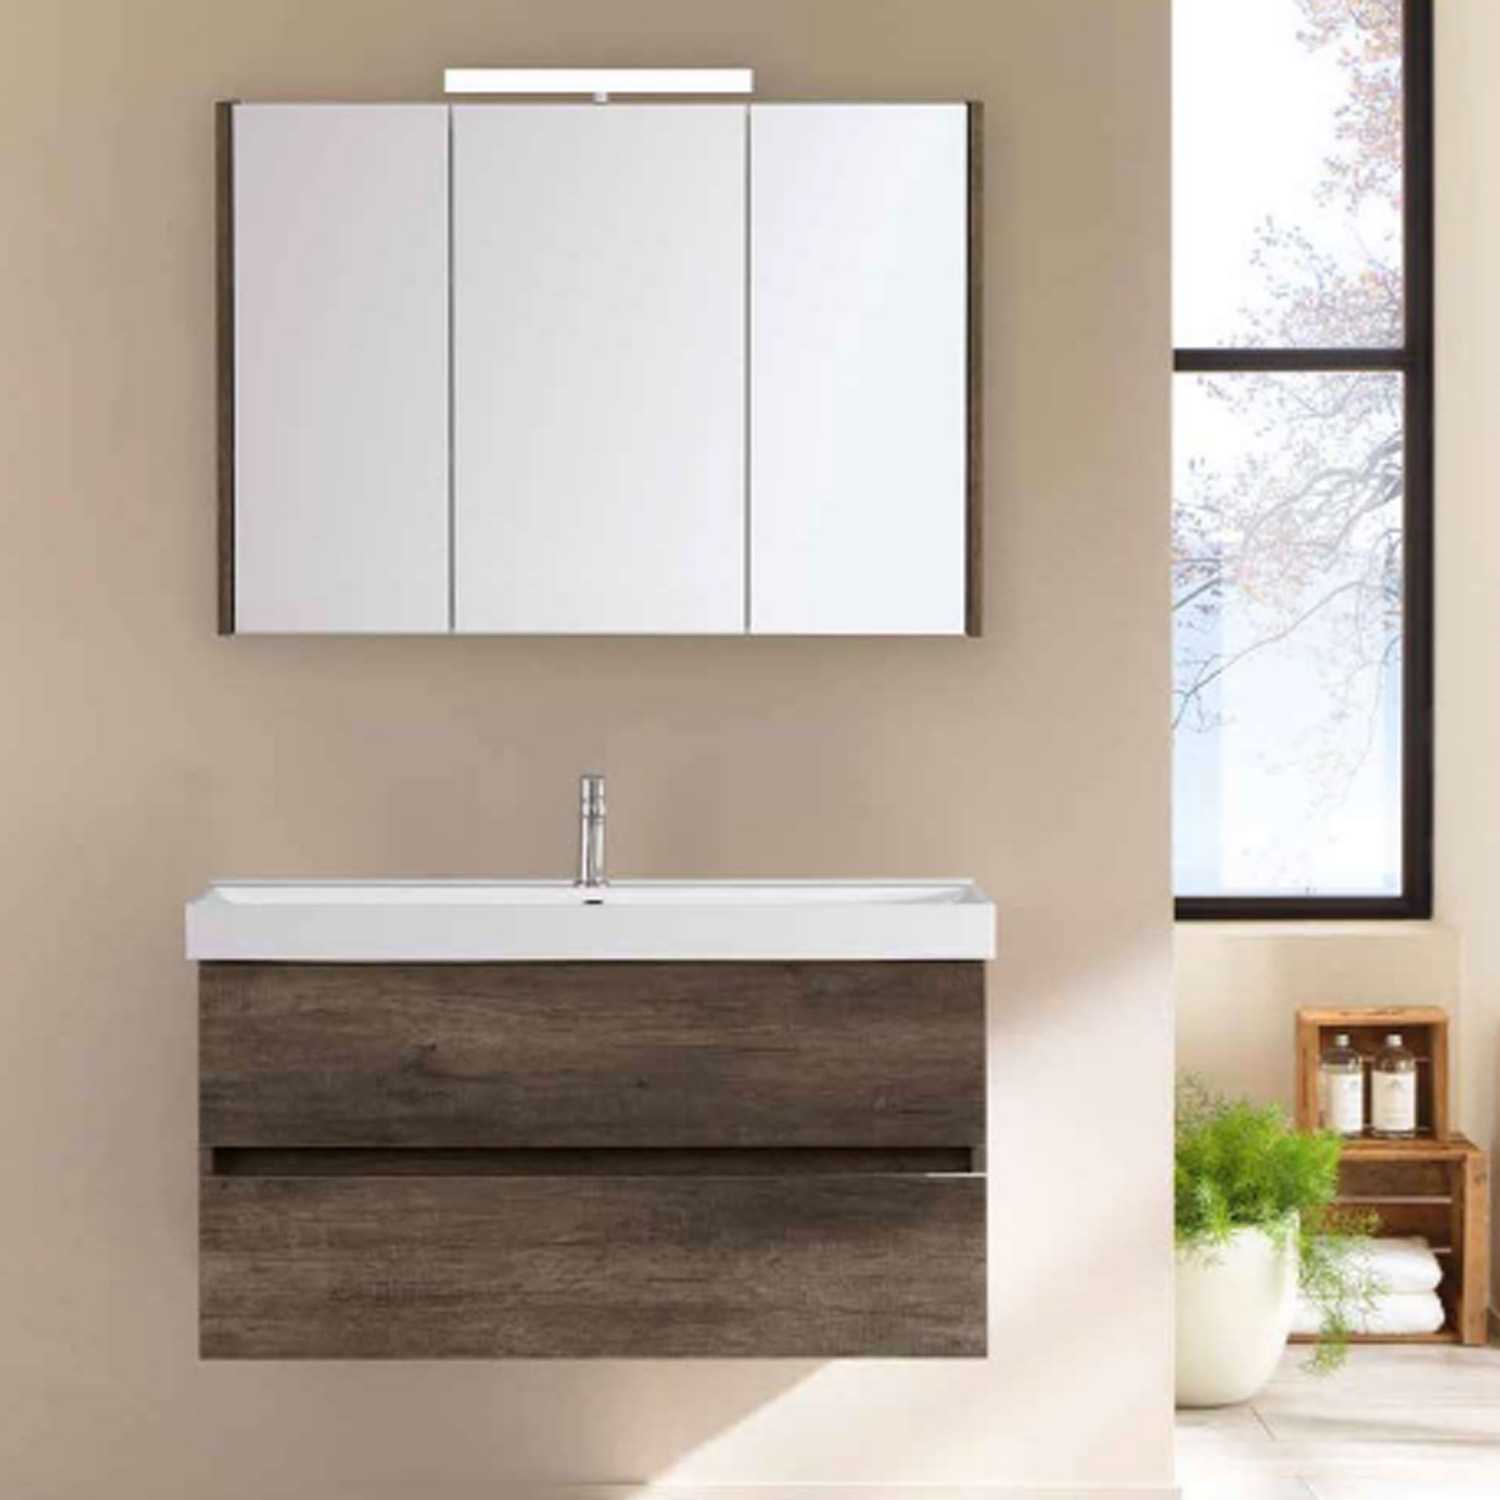 Mueble de baño de teca Florencia doble 180cm + lavabos crema